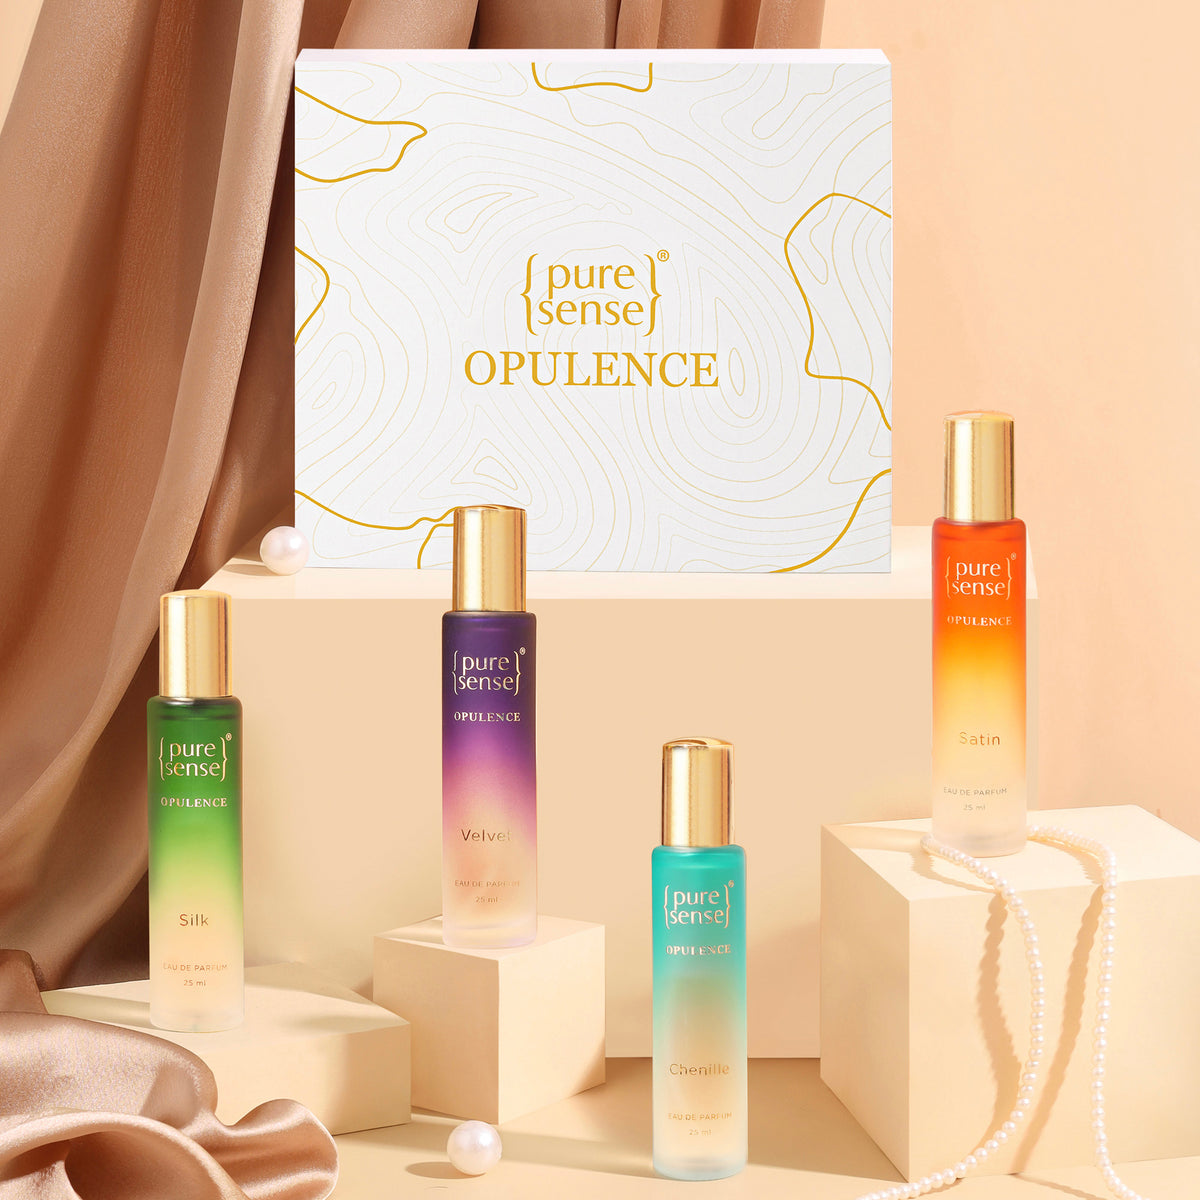 Opulence Perfume Gift Set (Silk x Velvet x Satin x Chenille)